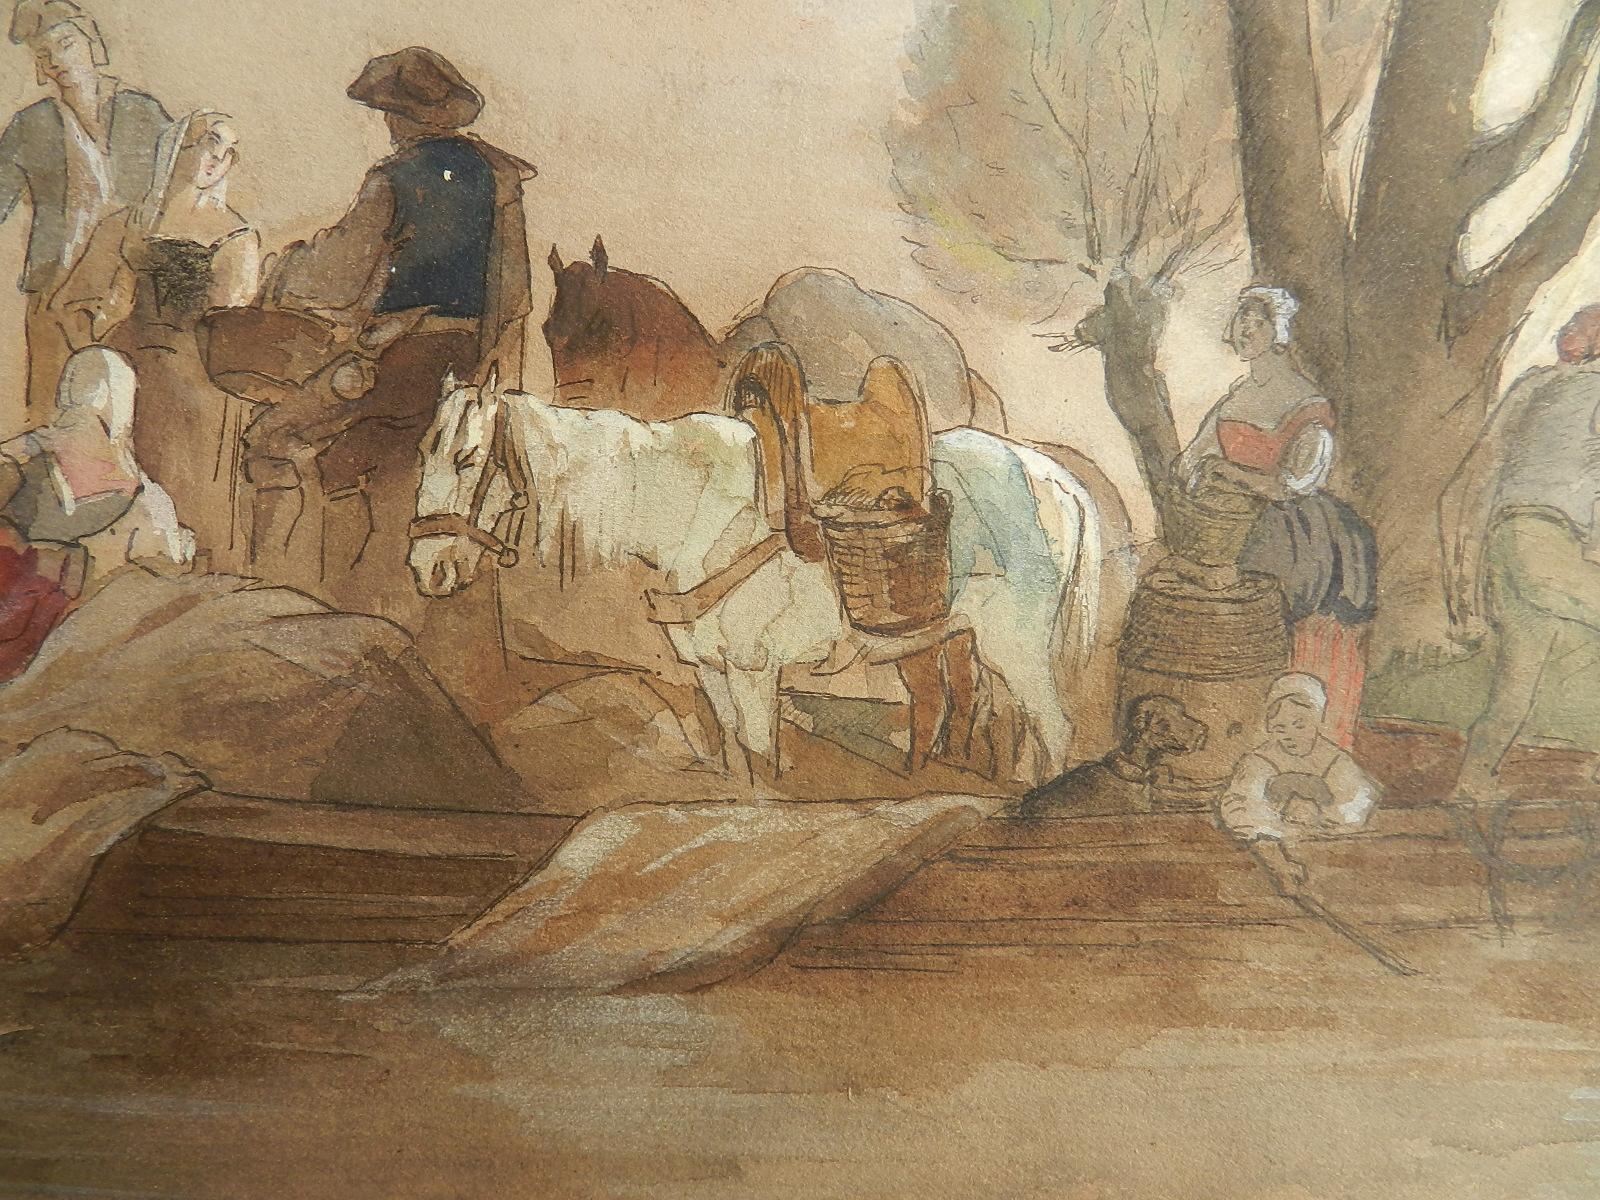 Französisch 19. Jahrhundert Aquarell Studie von Dorfbewohnern am Wasser Rand ungerahmt
Manier von Jules Hereau
Absolut reizvolles Gemälde aus einem Folio von Werken aus einem privaten Nachlass, die alle aus einem Kreis von Amateur- und